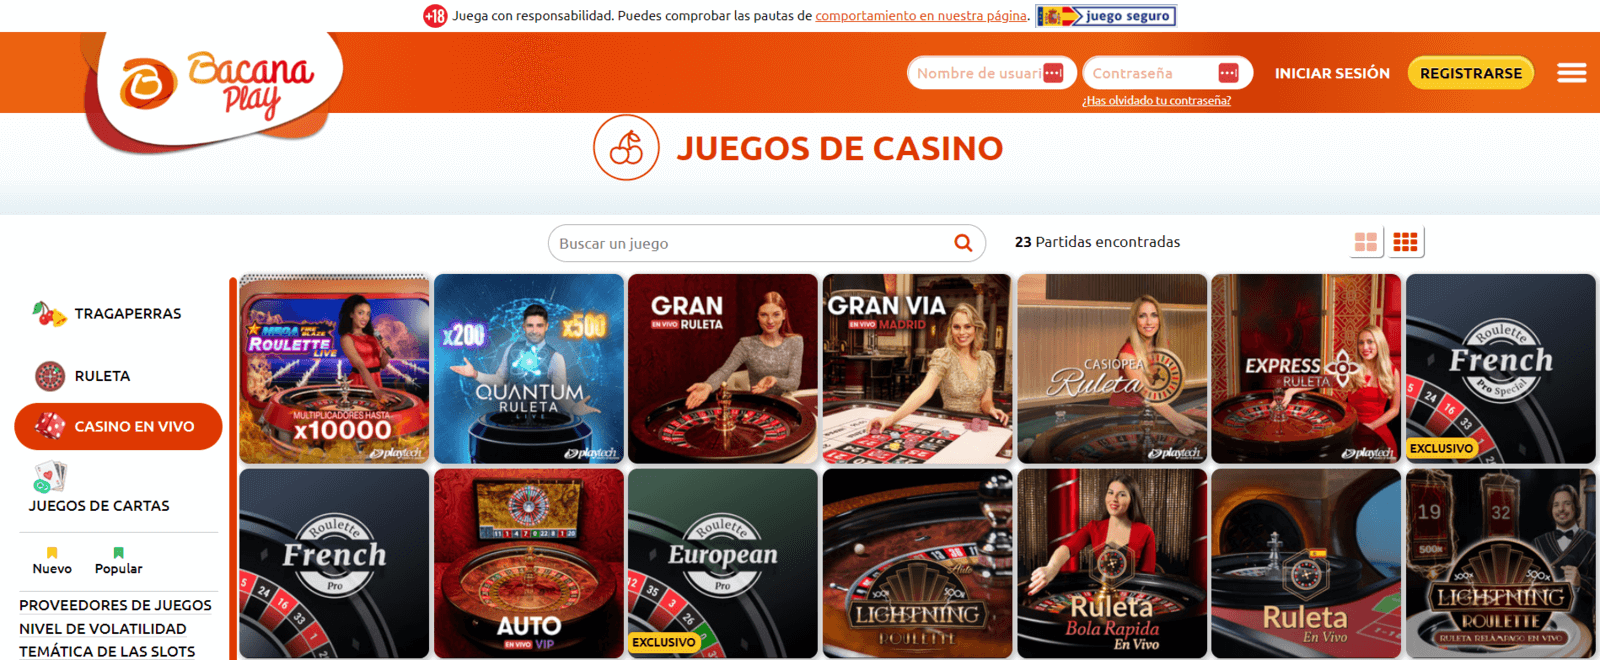 Bacanaplay Casino en vivo online de España